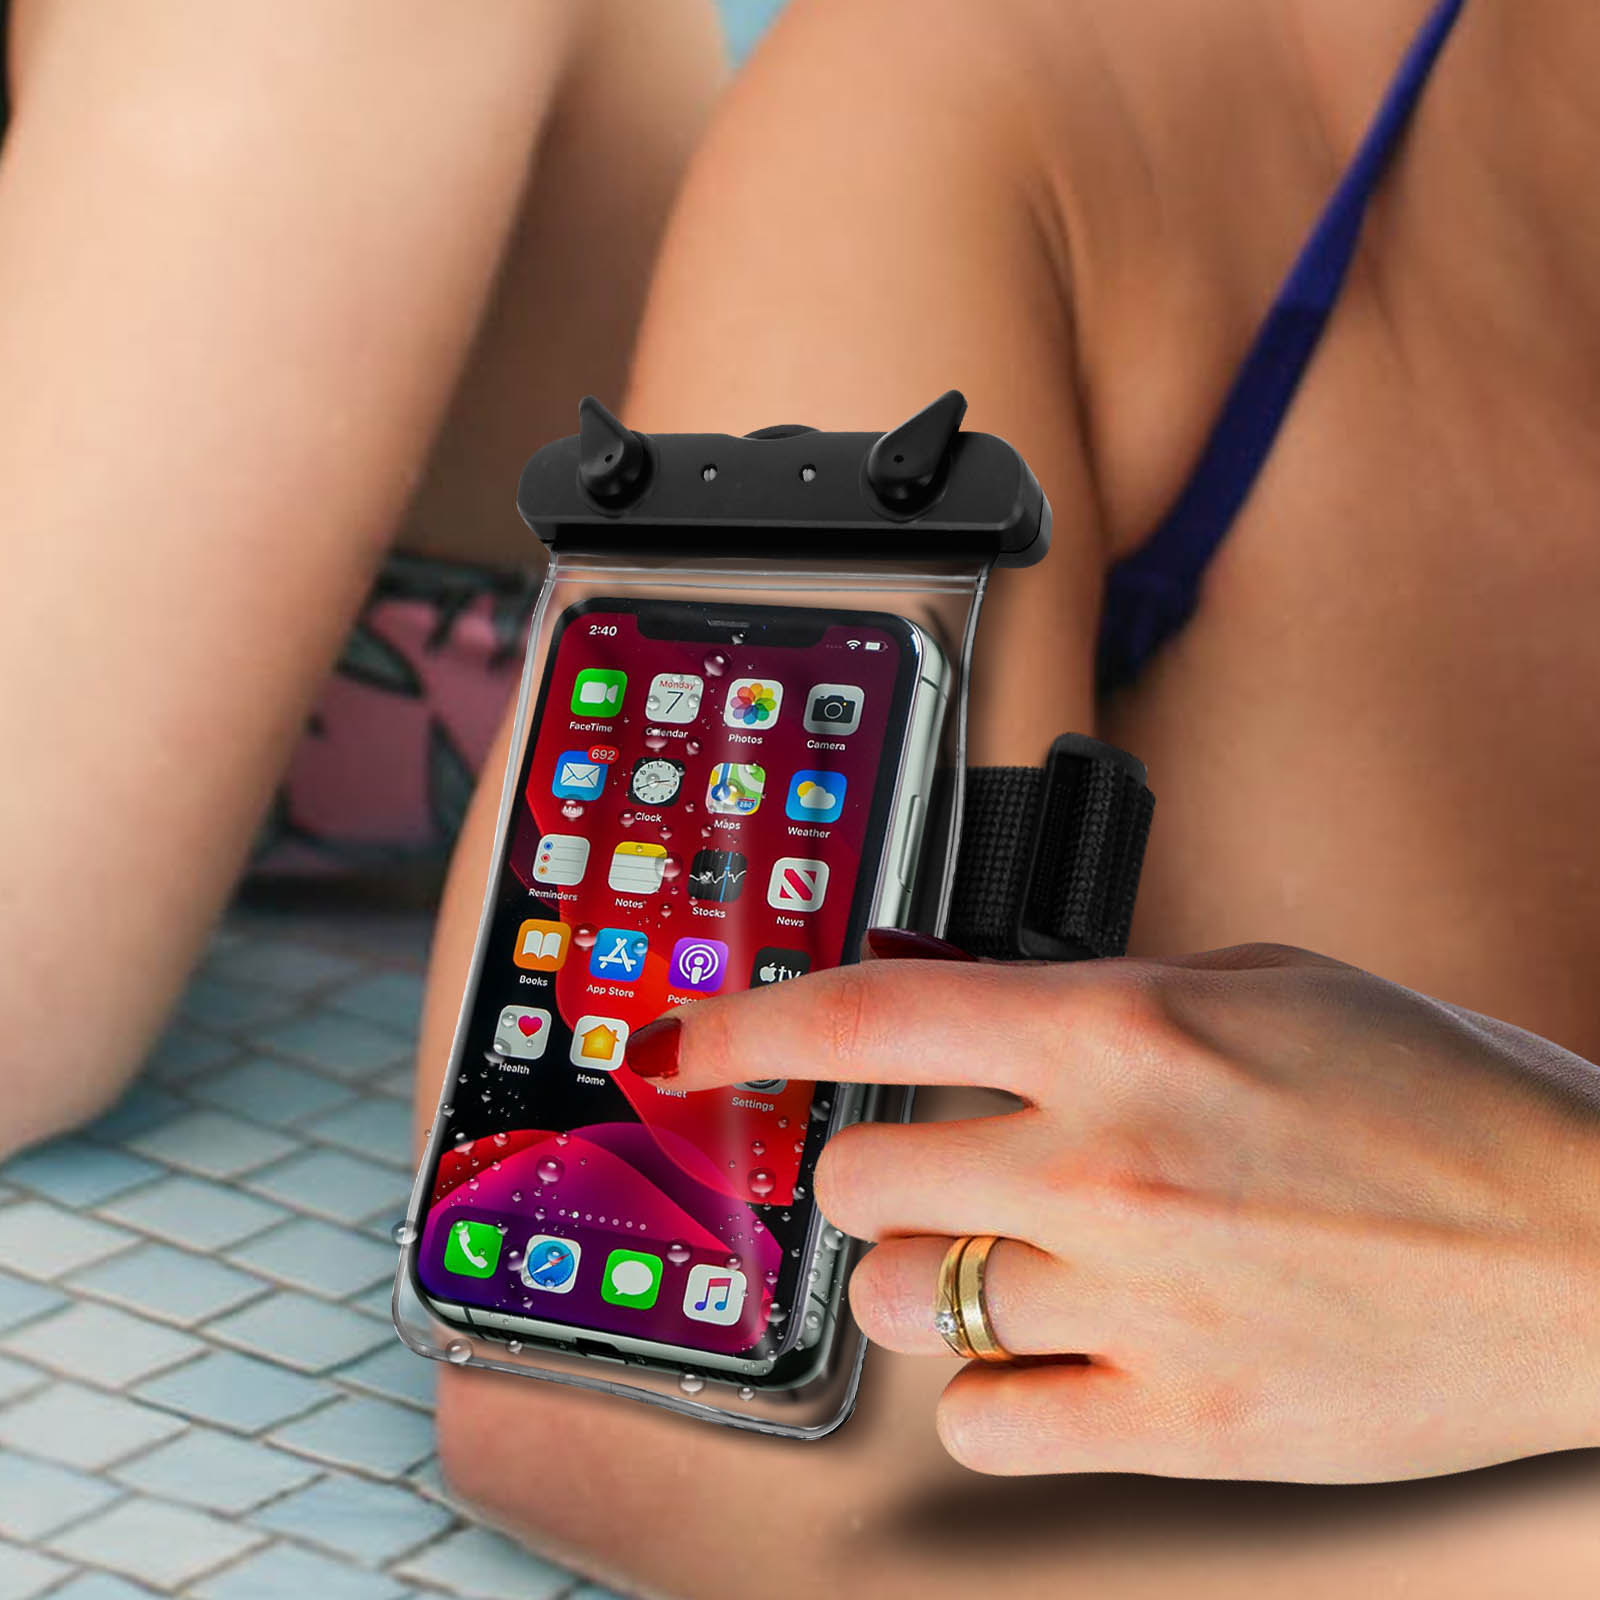 Brazalete Smartphone Impermeable de Playa, 100% Táctil